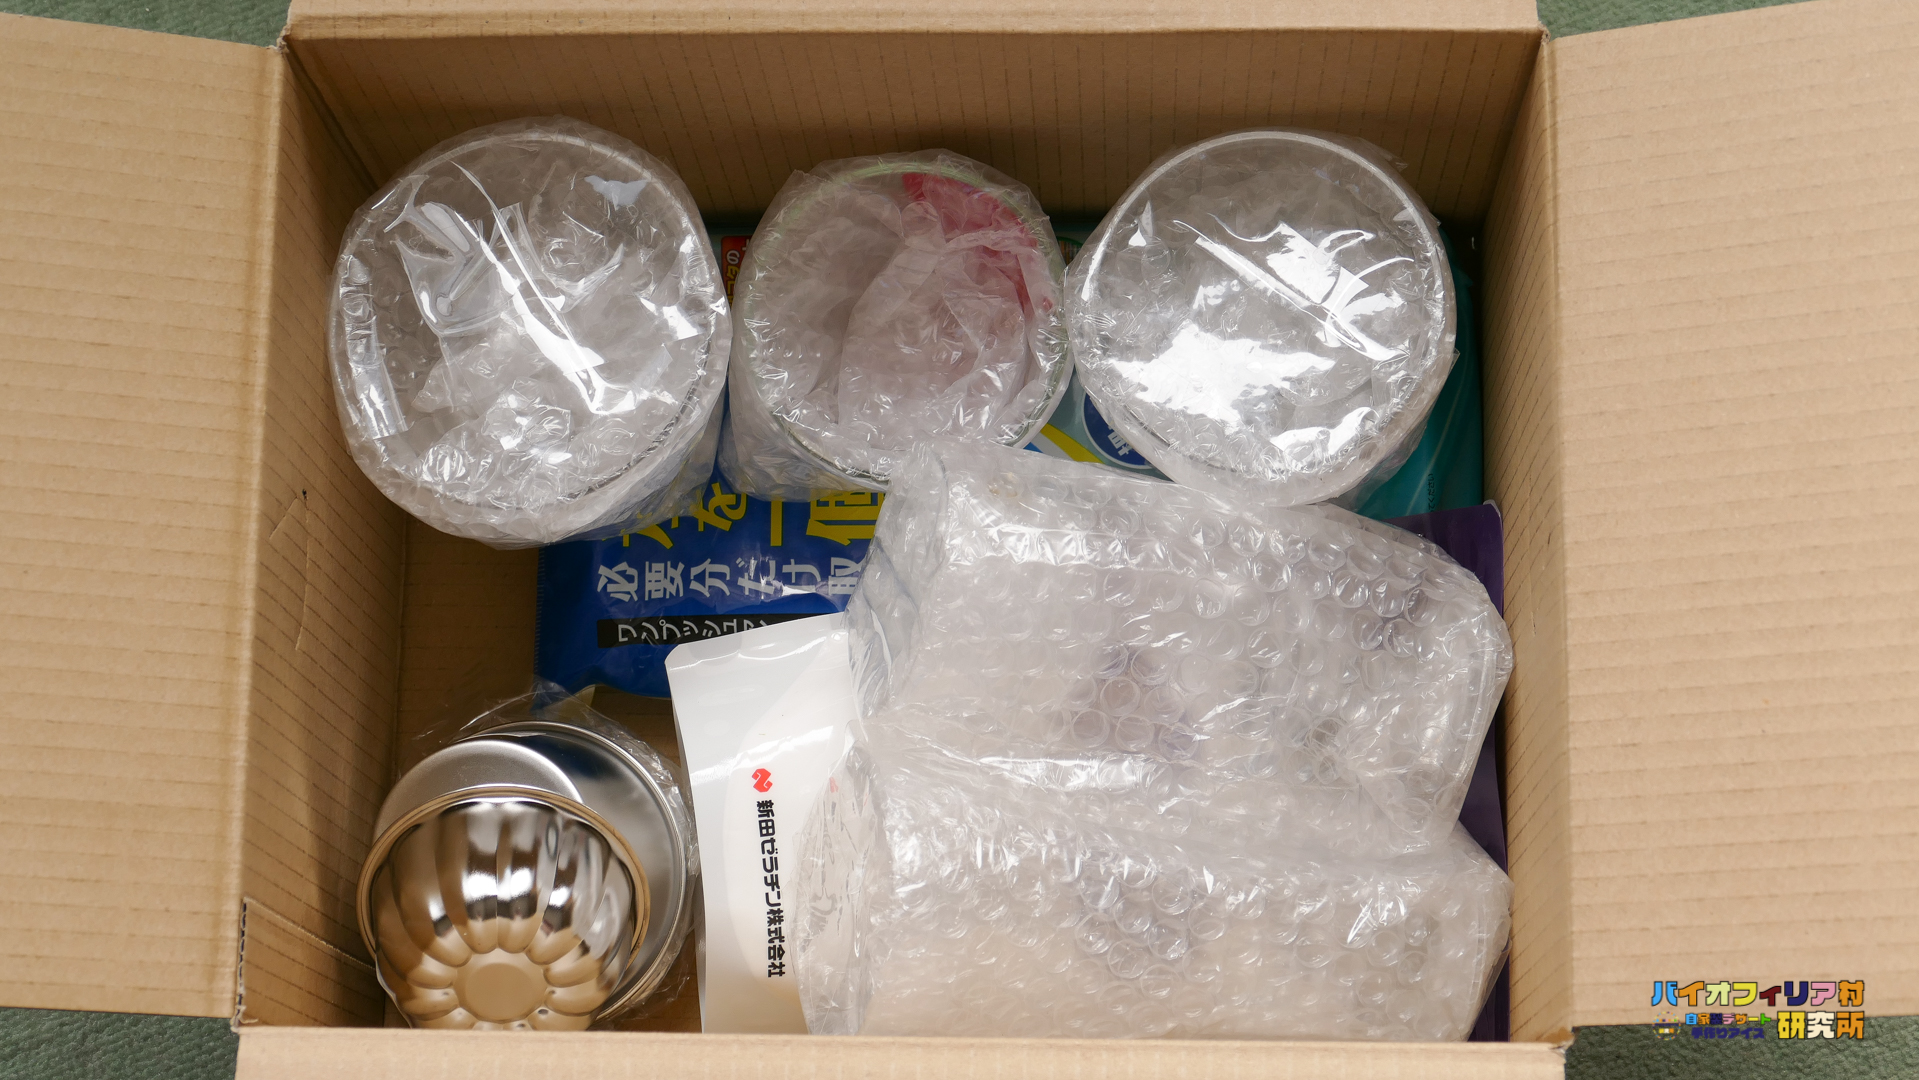 アマゾンから届いた東洋佐々木グラスの製品の梱包状態の紹介です。